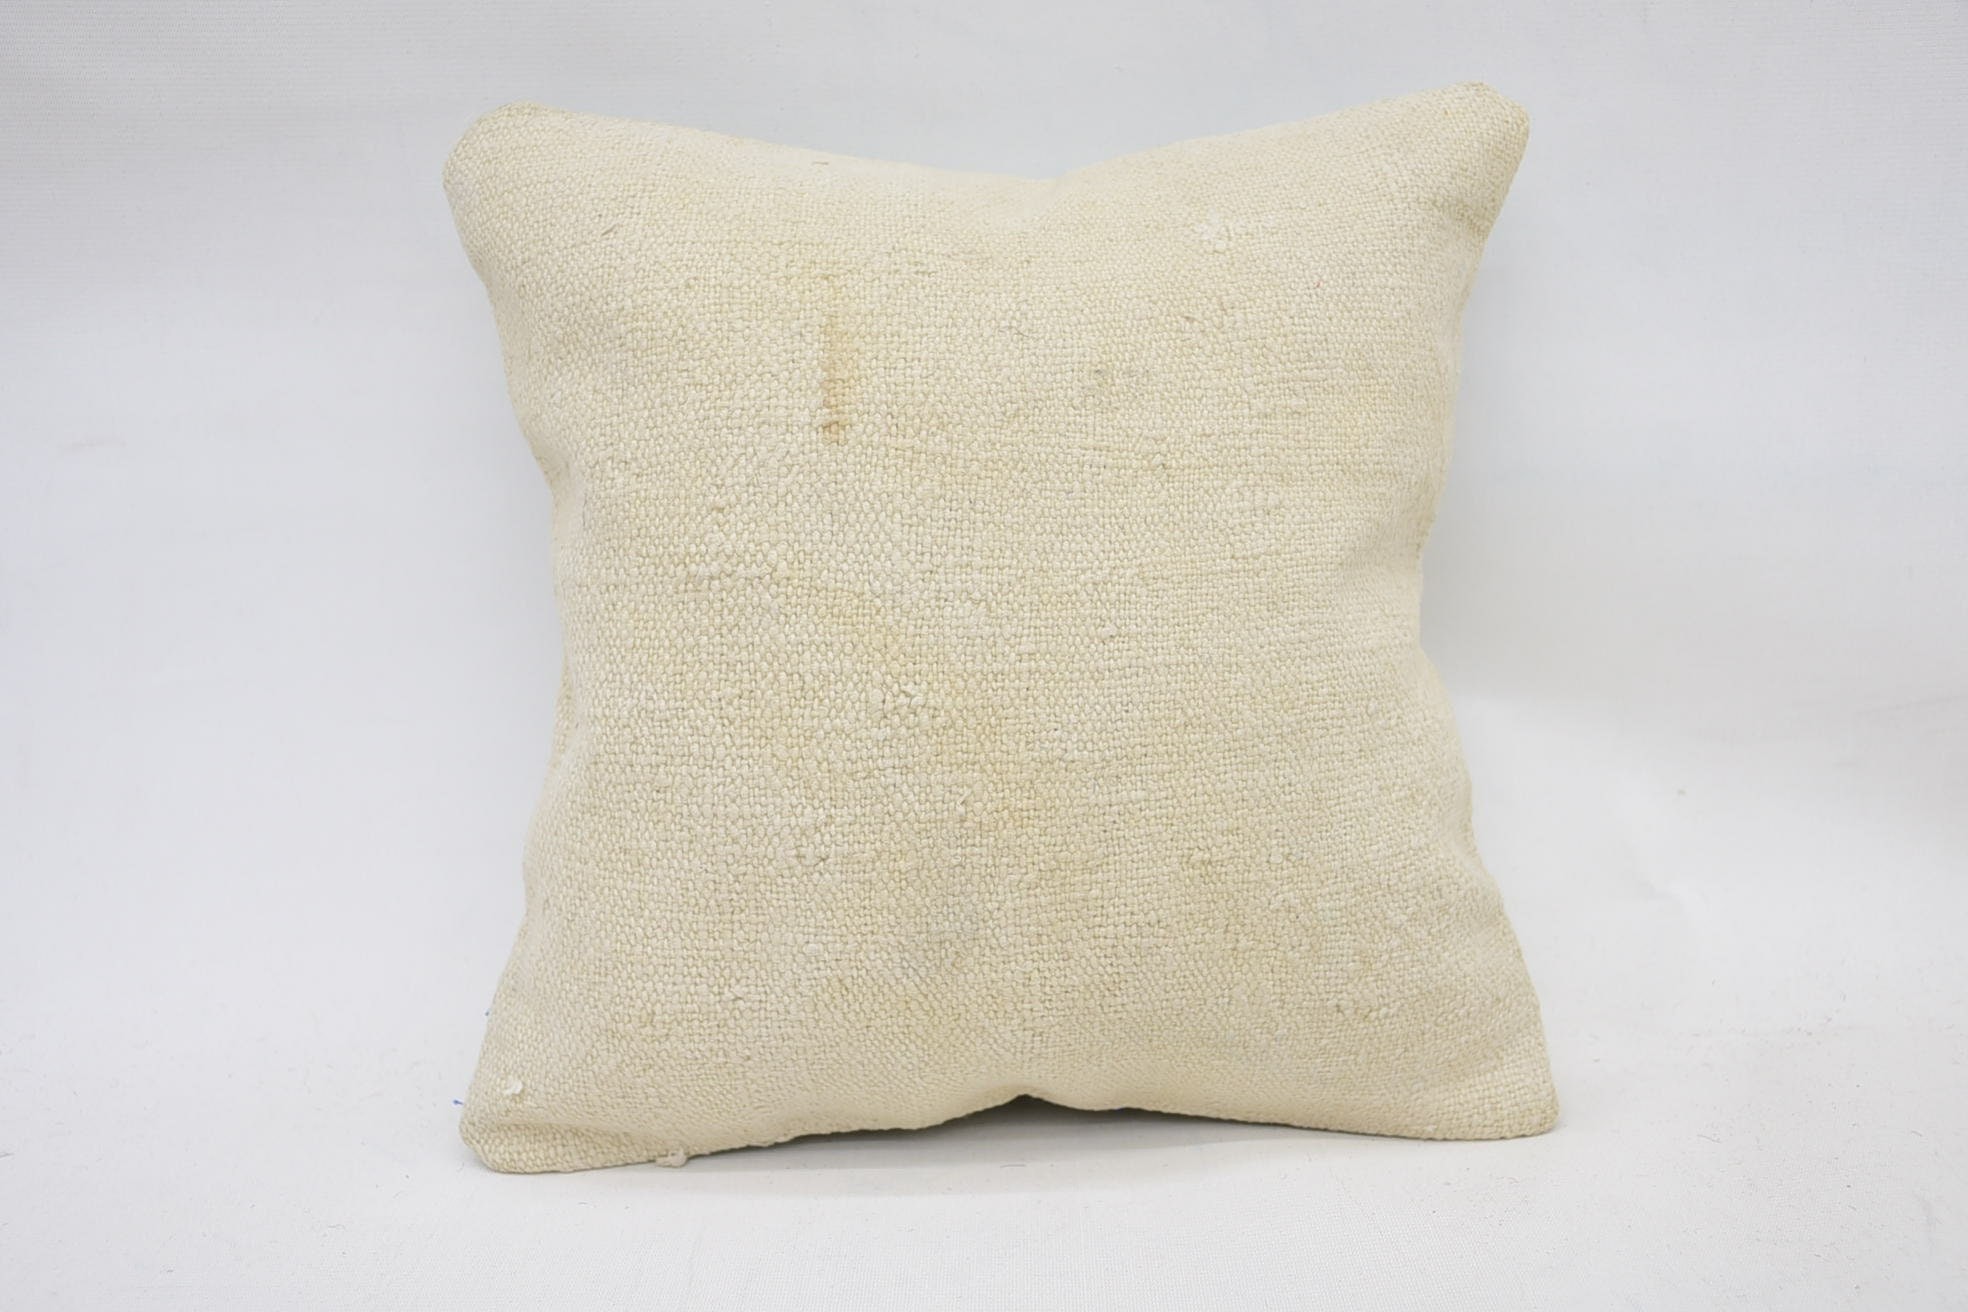 12"x12" Beige Pillow Cover, Kilim Pillow Cover, Car Cushion Cover, Pillow for Sofa, Designer Throw Cushion, Kilim Pillow